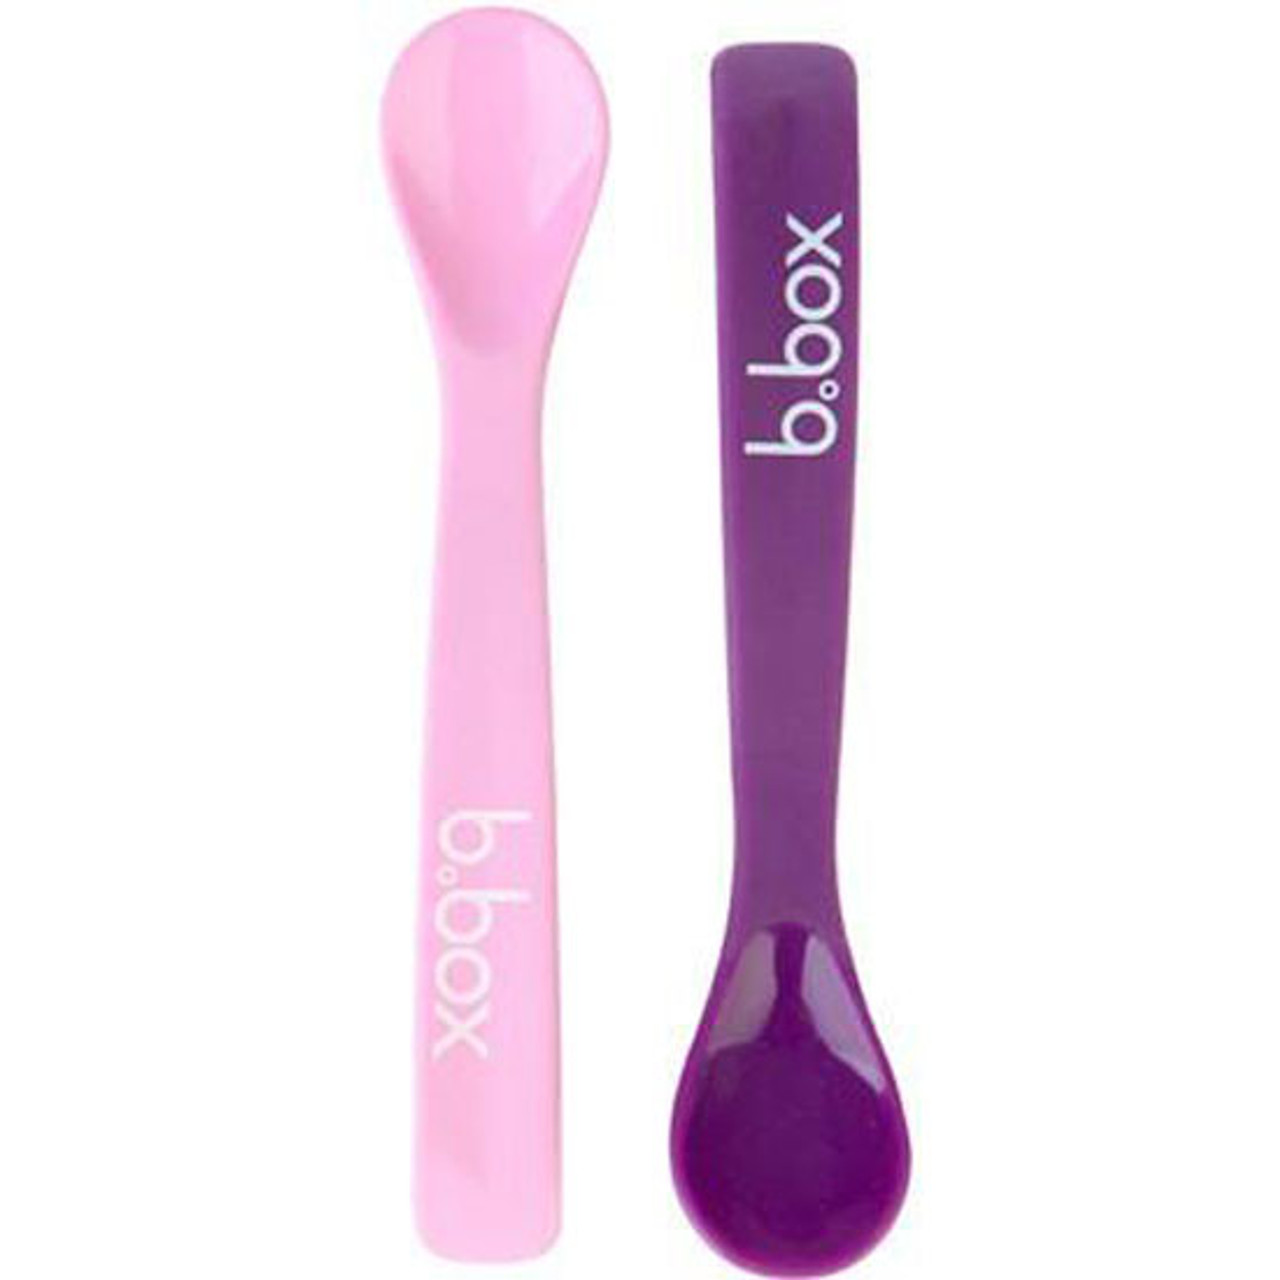 2 pack Baby Spoons Pink/Purple